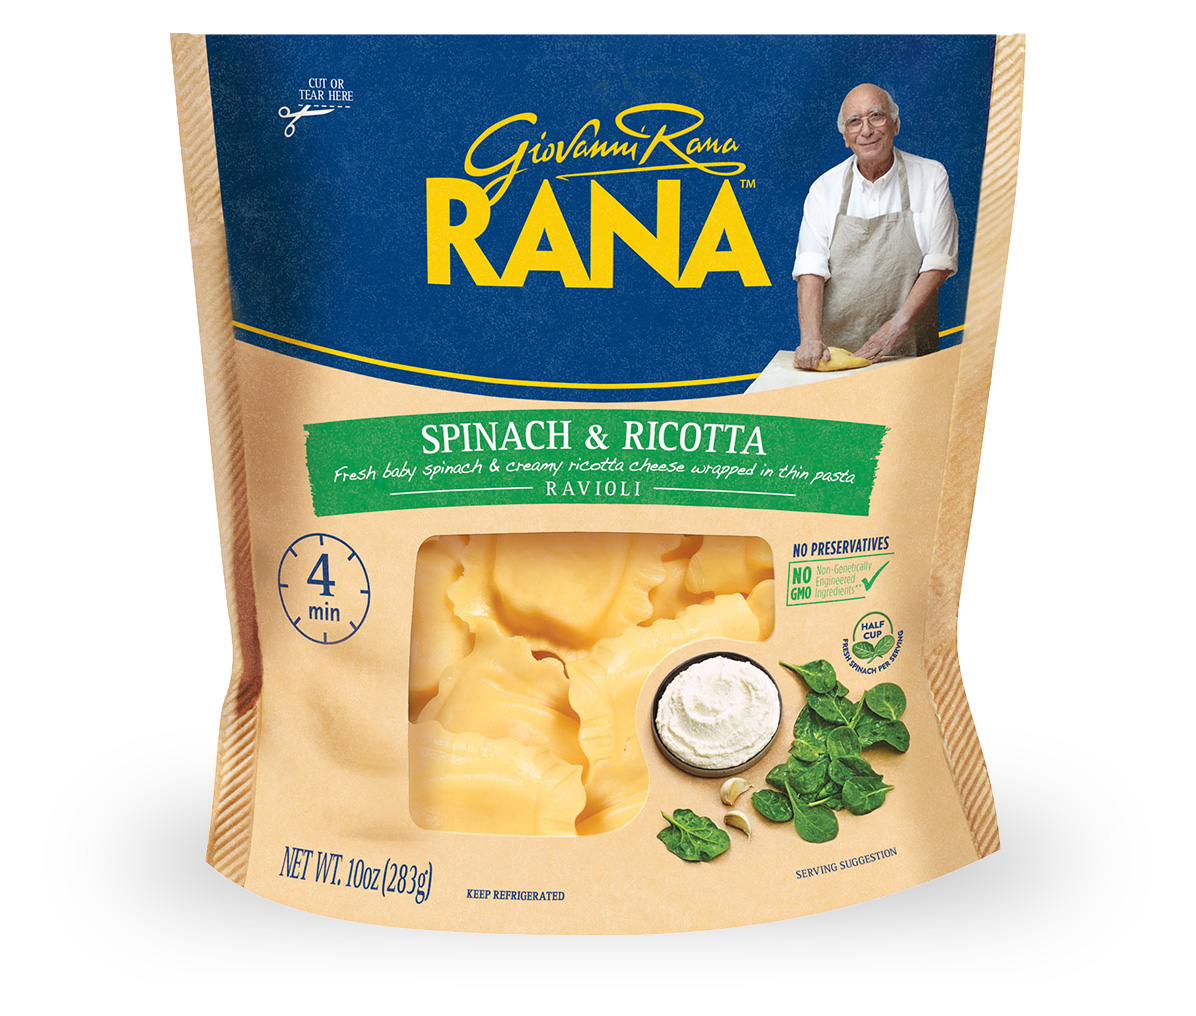 Spinach & Ricotta Ravioli - Giovanni Rana